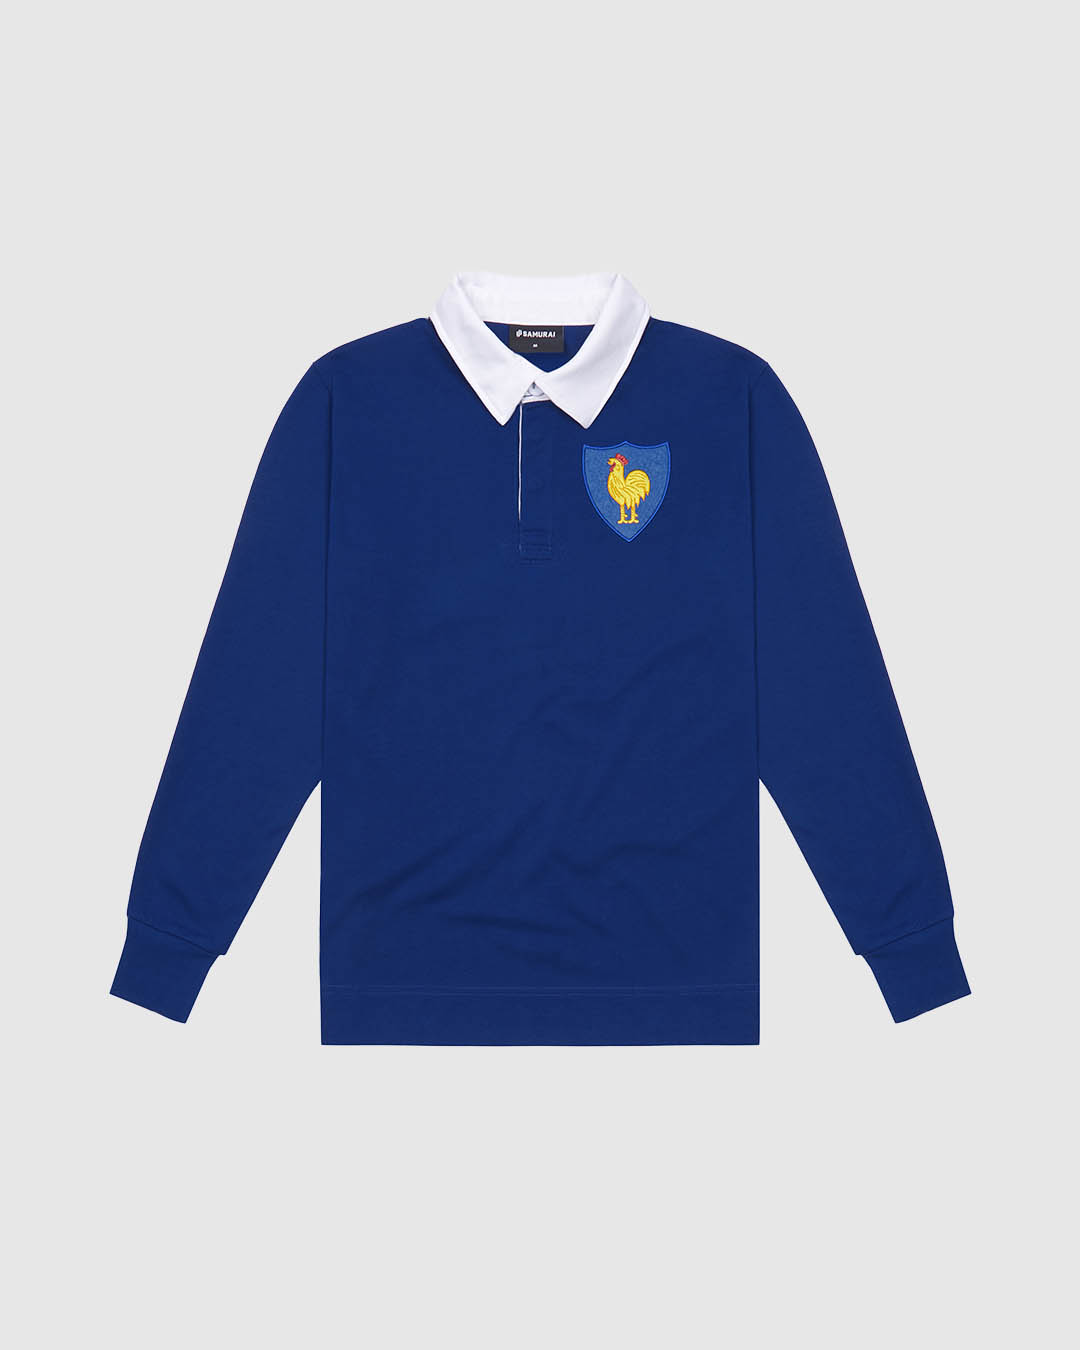 VC: FRA - Vintage Rugby Shirt - France